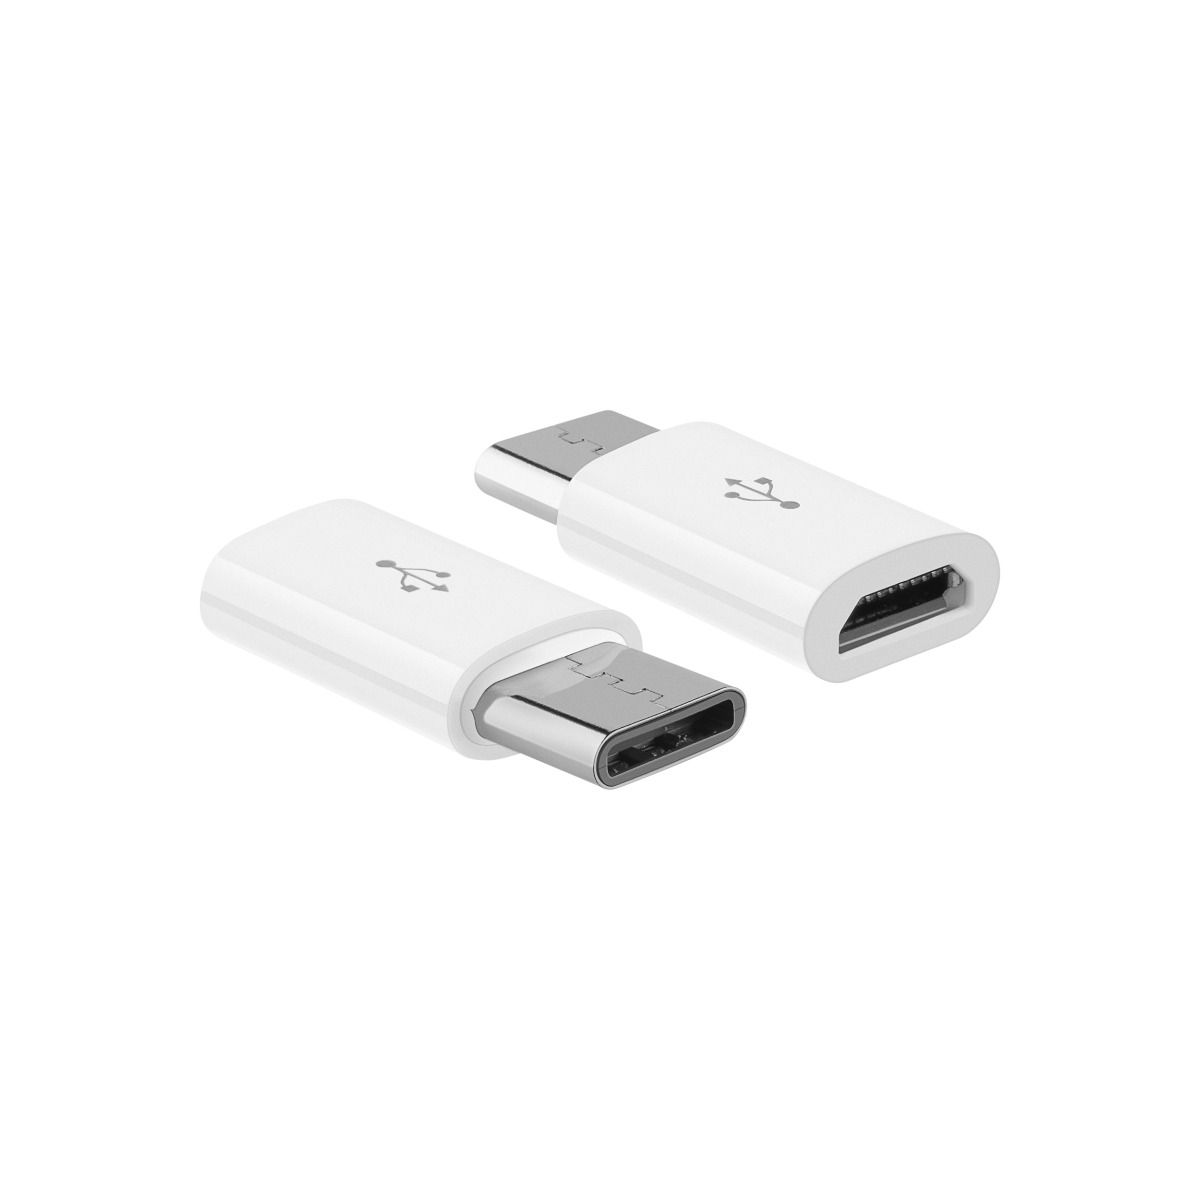 deleyCON 2X Adaptador de Micro USB Hembra a USB C Macho para Cargar y Sincronizar Smartphone Tablet Portátil Blanco 